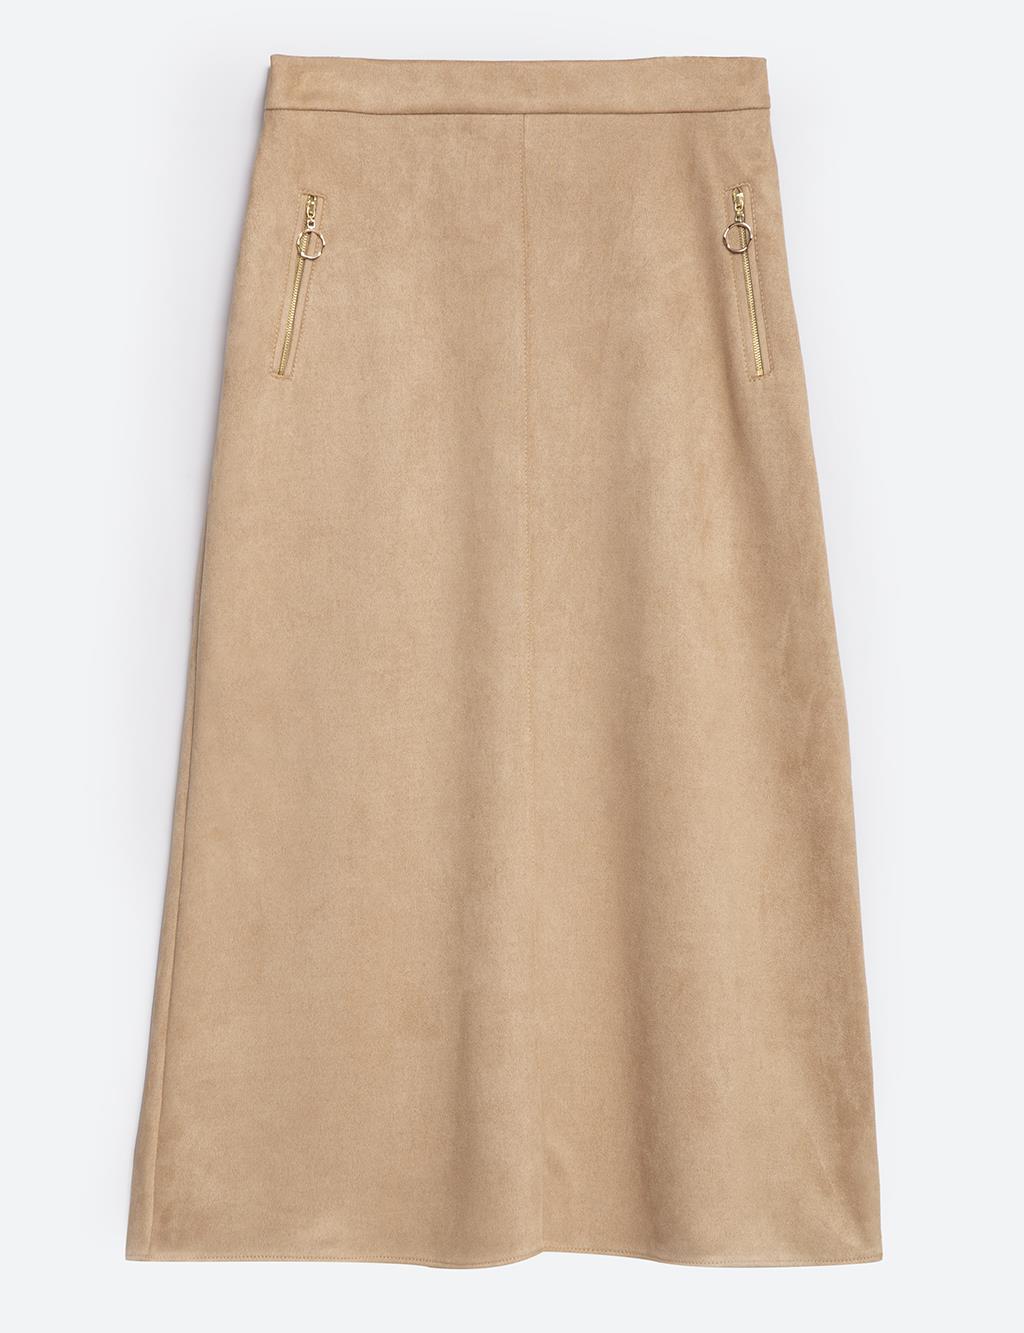 Elastic Waist Zipper Detail A-Line Skirt in Mink Color